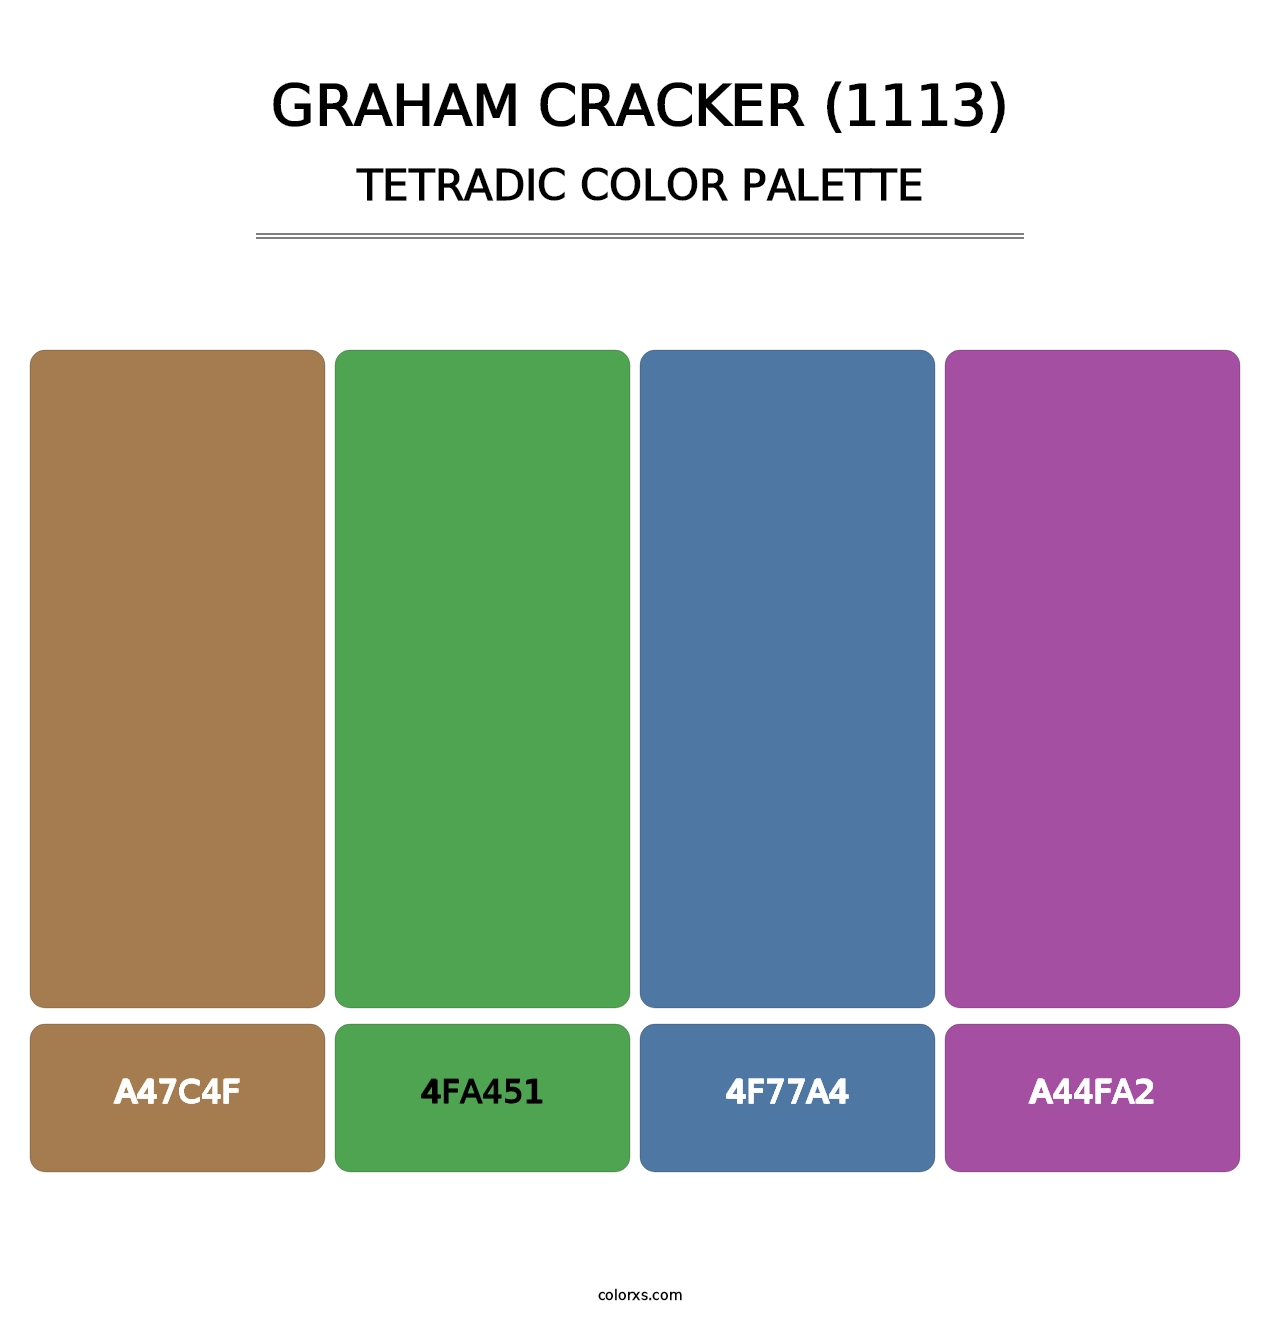 Graham Cracker (1113) - Tetradic Color Palette